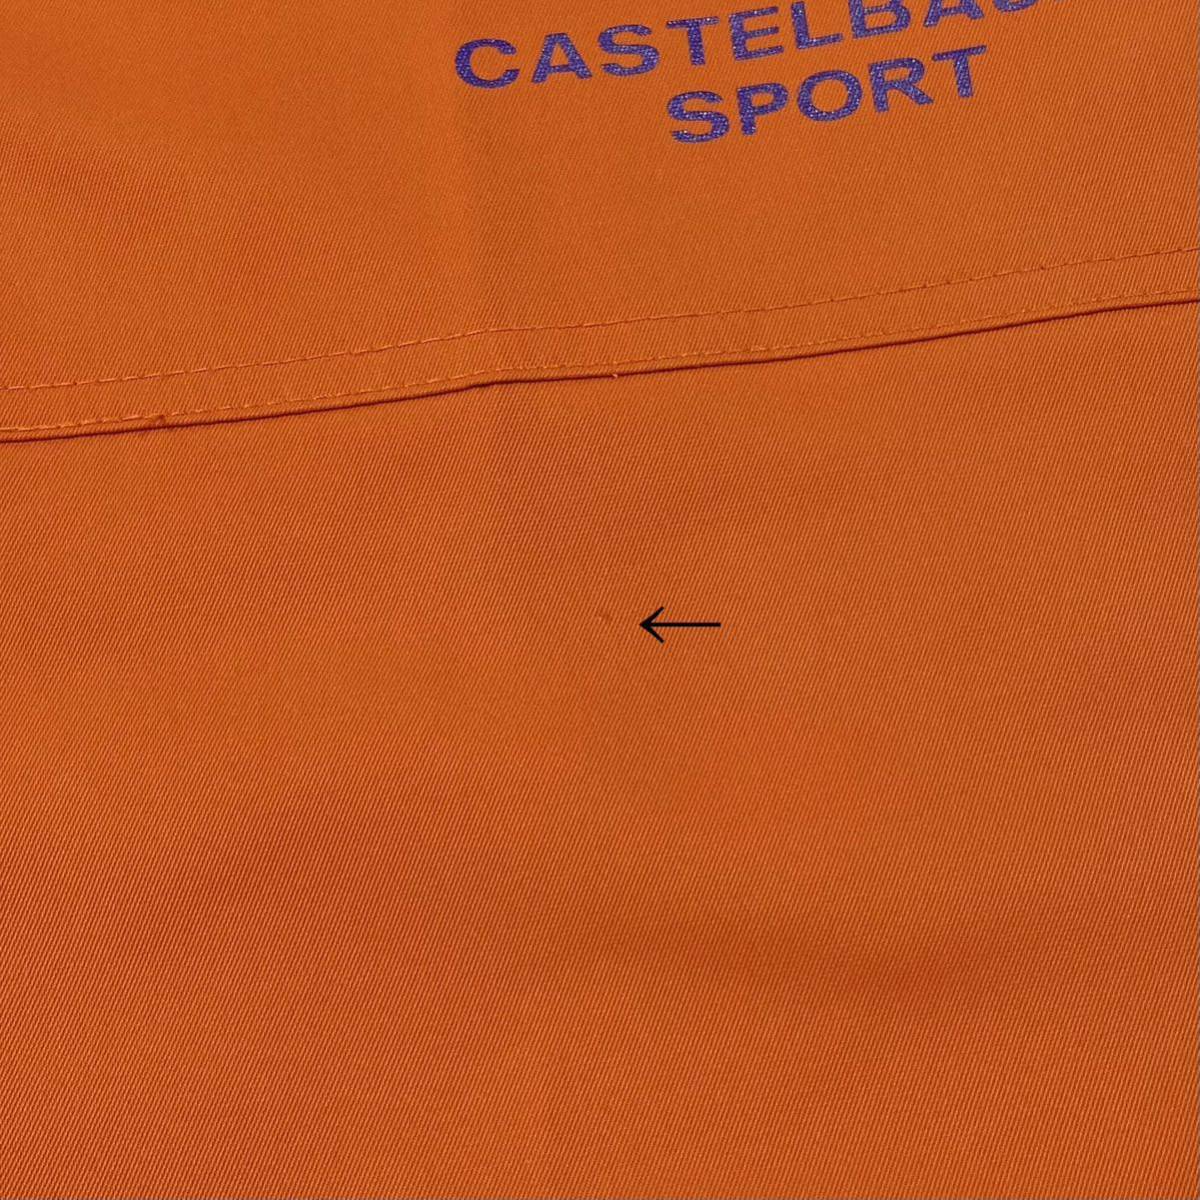 CASTELBAJAC(カステルバジャック)ゴルフパンツ ボトムス ストレッチ性 プリントロゴ メンズ50 オレンジ系_画像10